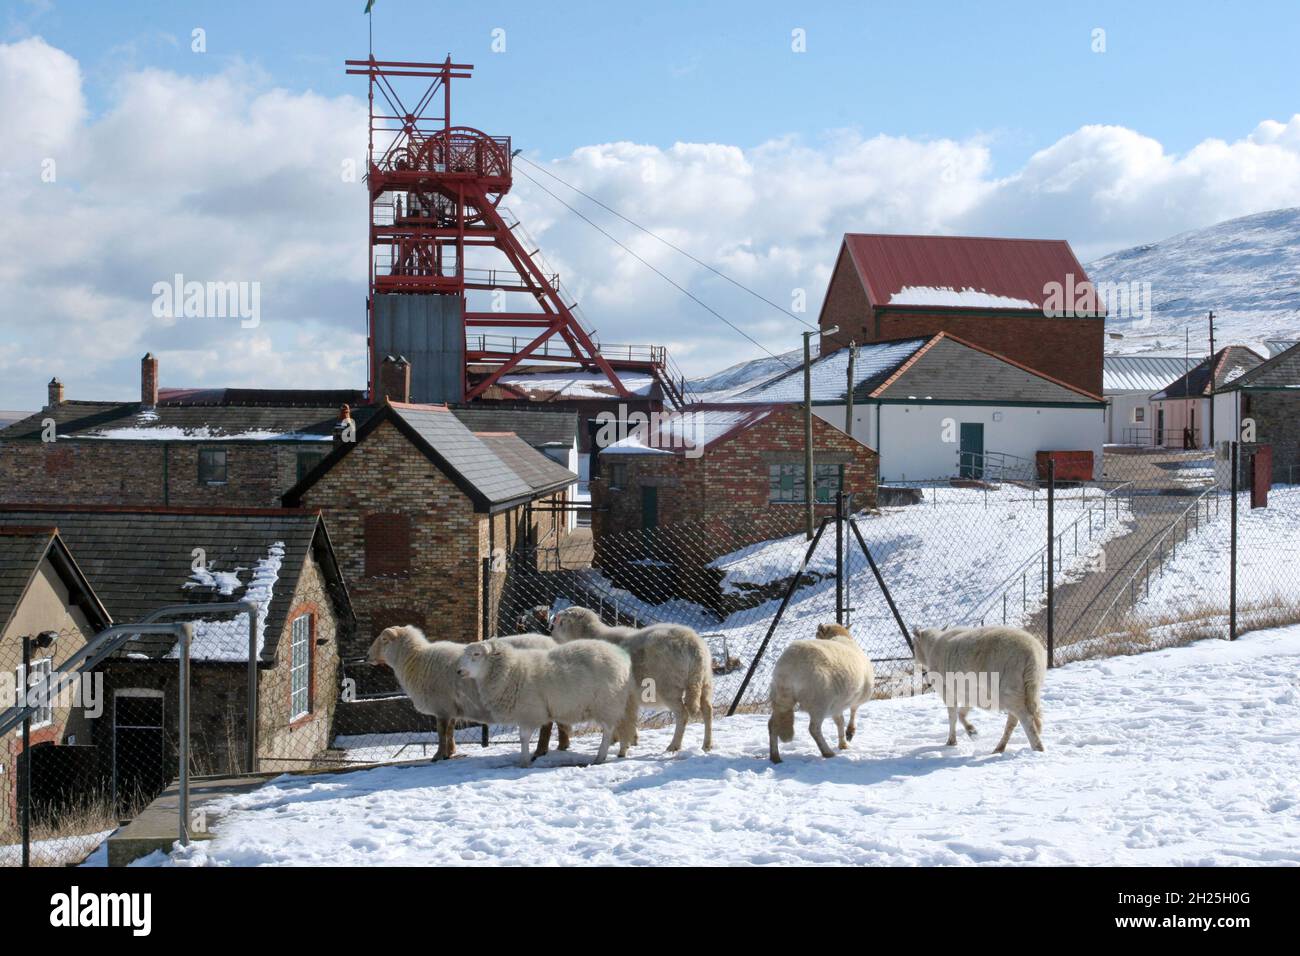 Big Pit museo miniera di carbone in pecore neve mostra torre tortuosa e fuori edifici cielo blu nuvole bianche fluffy, spazio copia, Blaenafon, Galles Regno Unito copia spazio Foto Stock